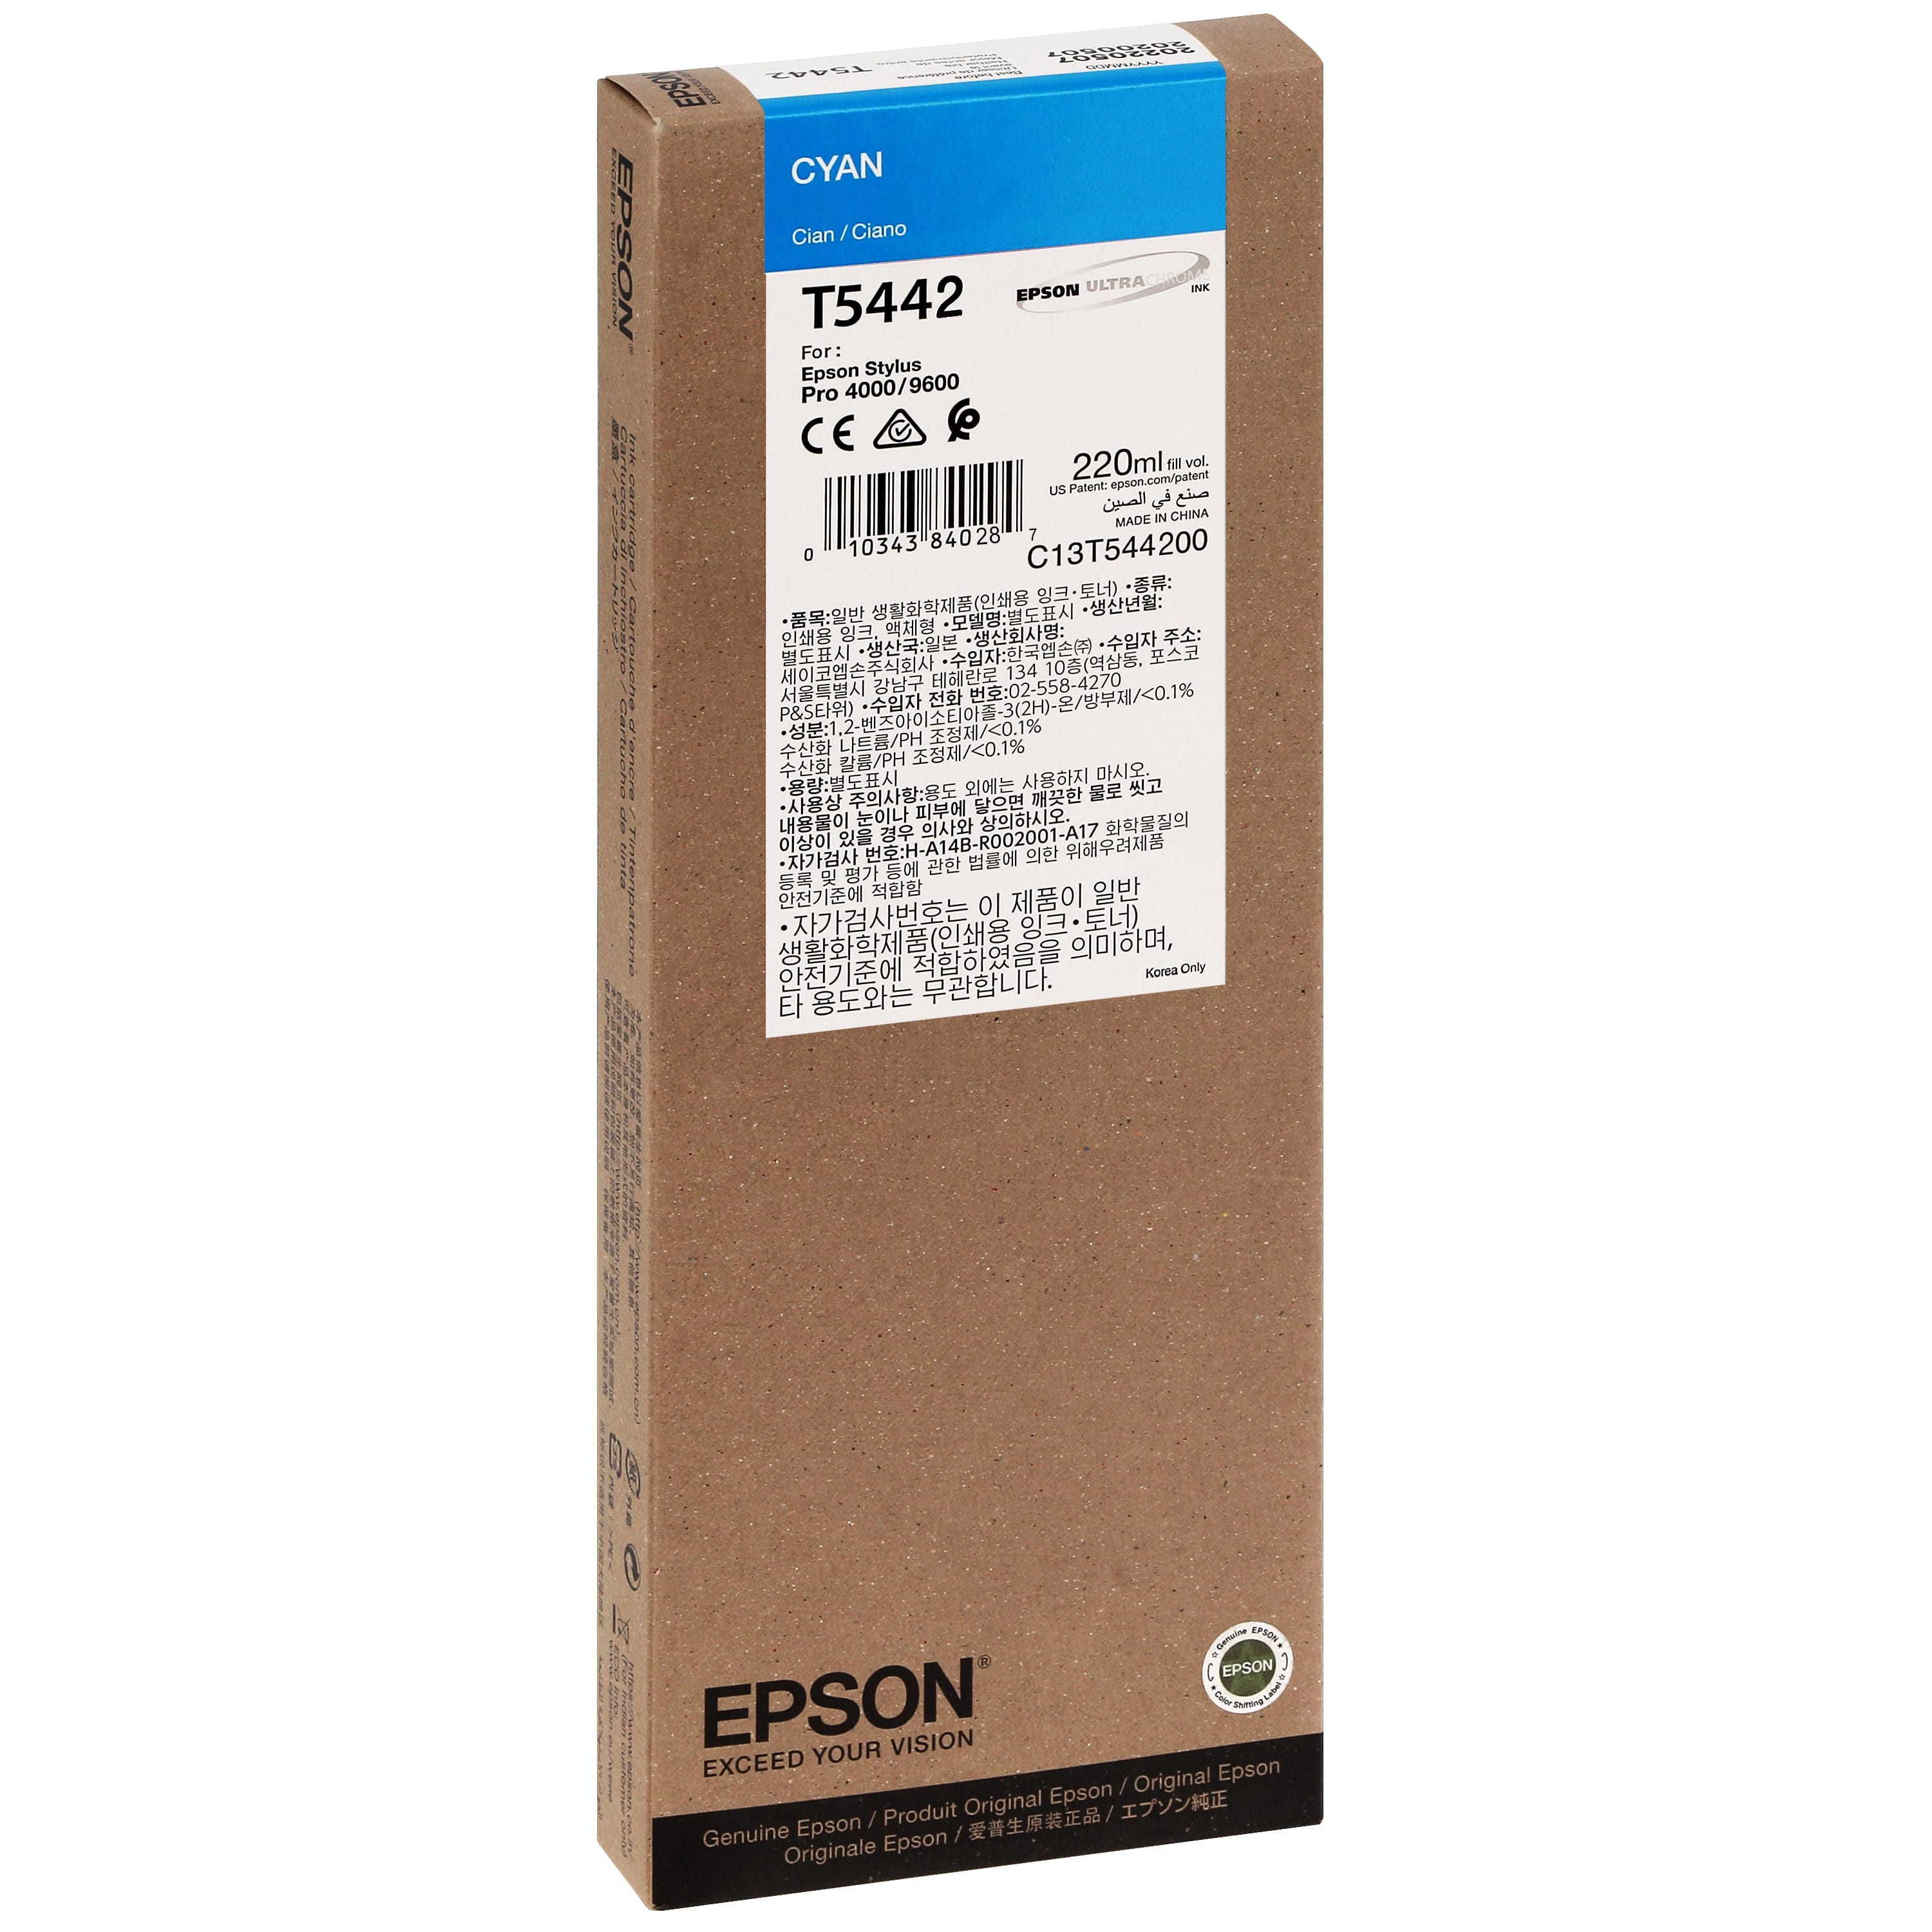 EPSON - Cartouche d'encre traceur T5442 Pour imprimante 4000/4400/7600/9600 Cyan - 220ml